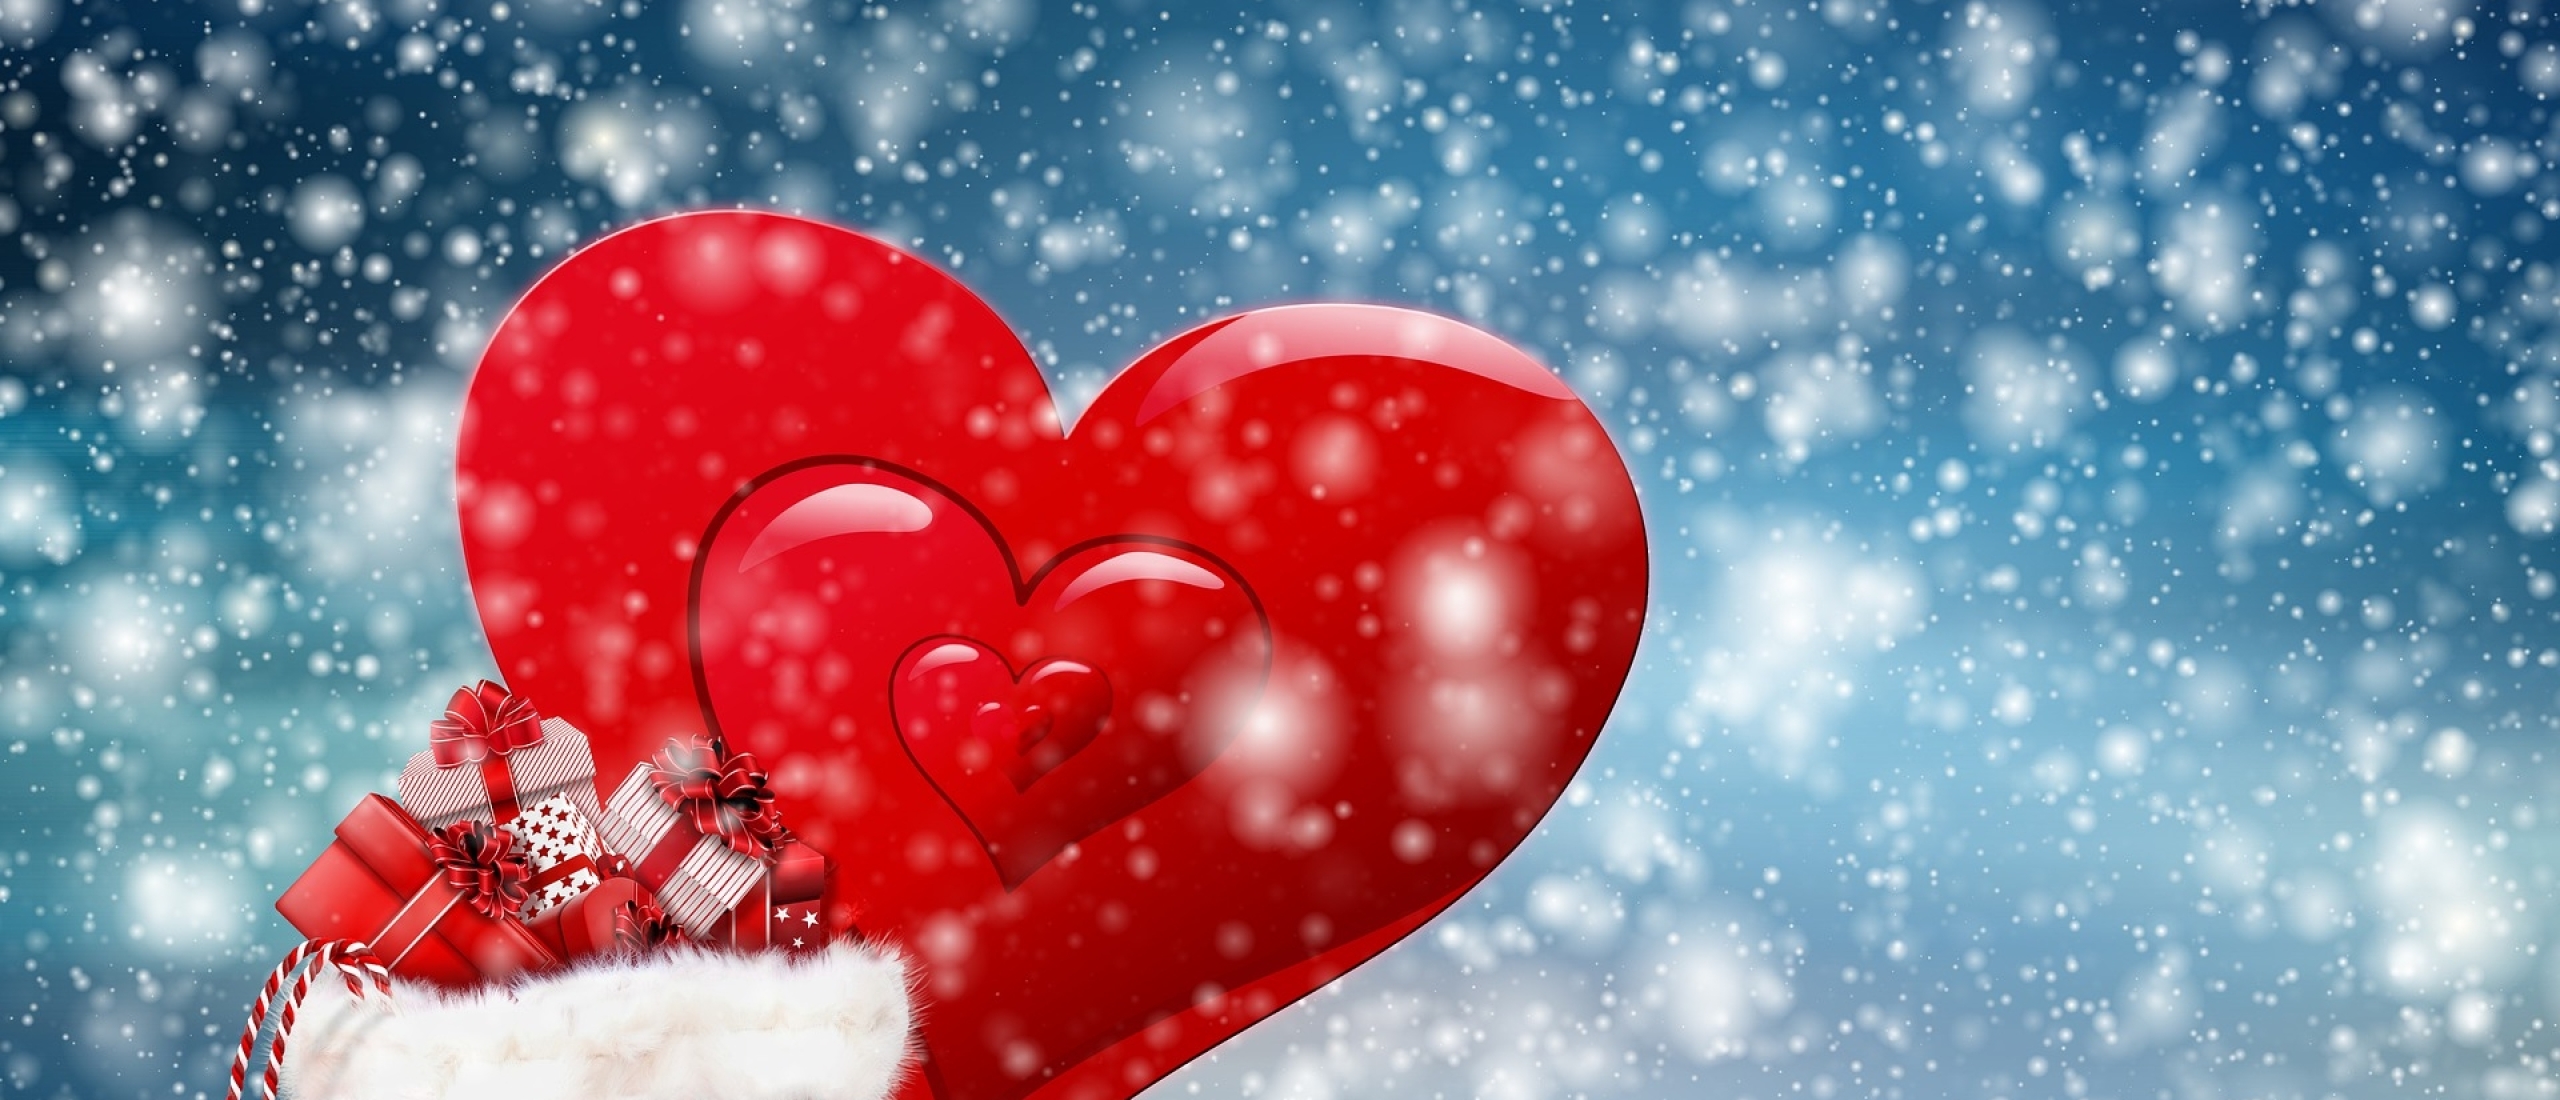 Sinterklaas is de schutspatroon van de liefde